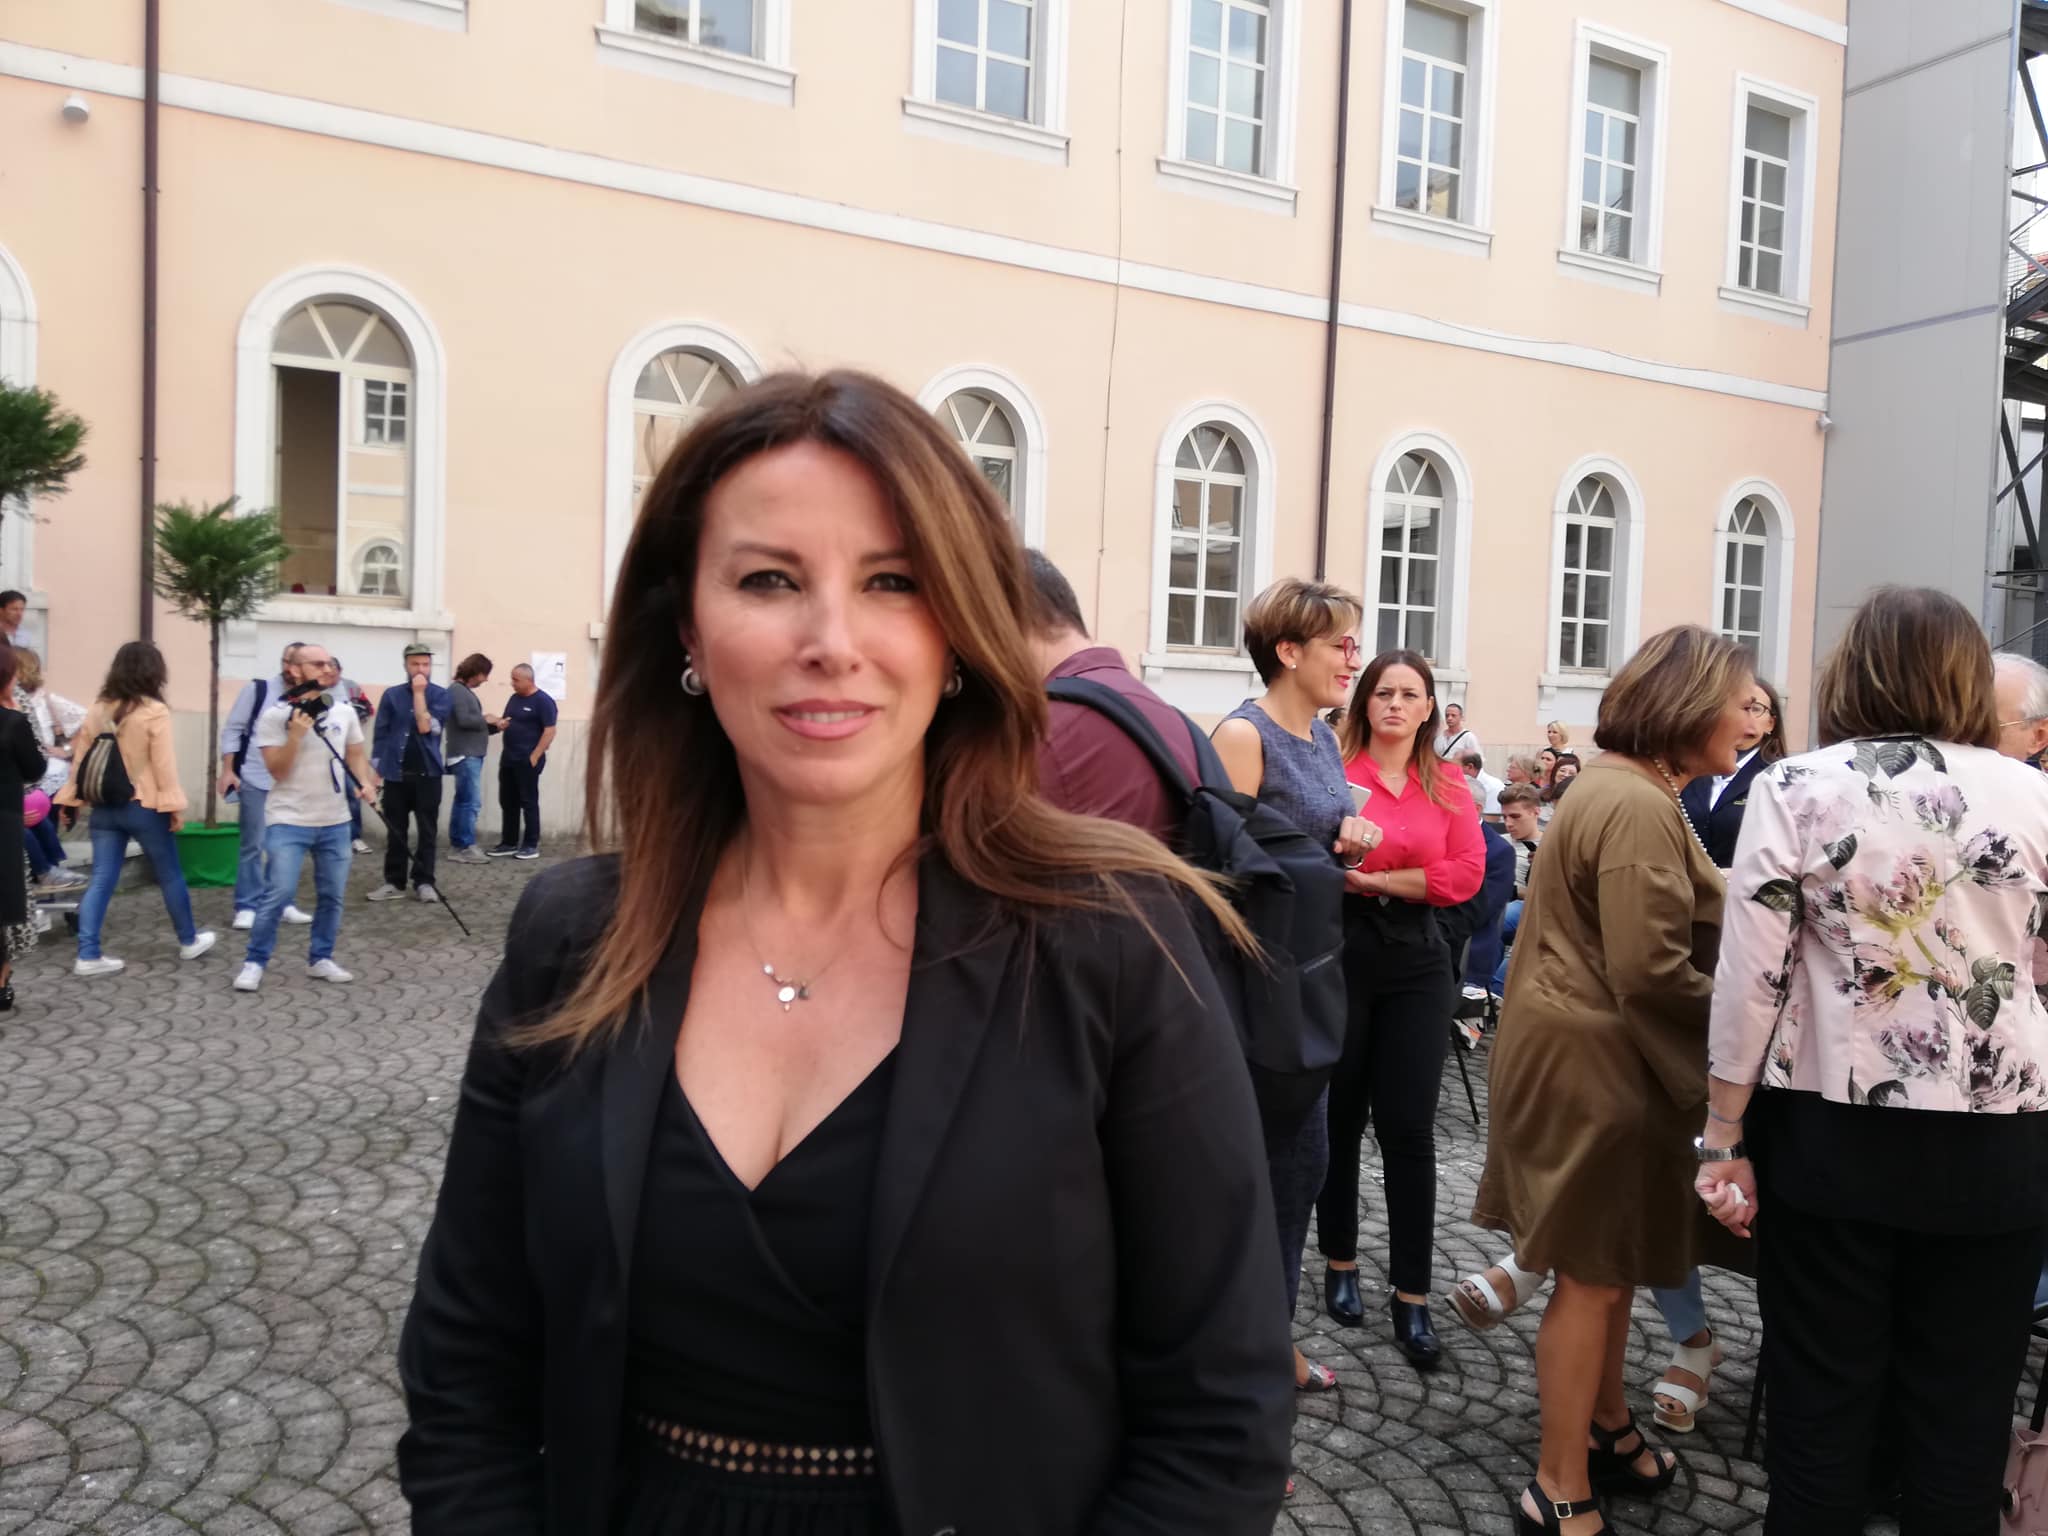 Avellino| Scuola, Petitto: Fiorella Pagliuca designata nuova dirigente dell’Ufficio scolastico provinciale